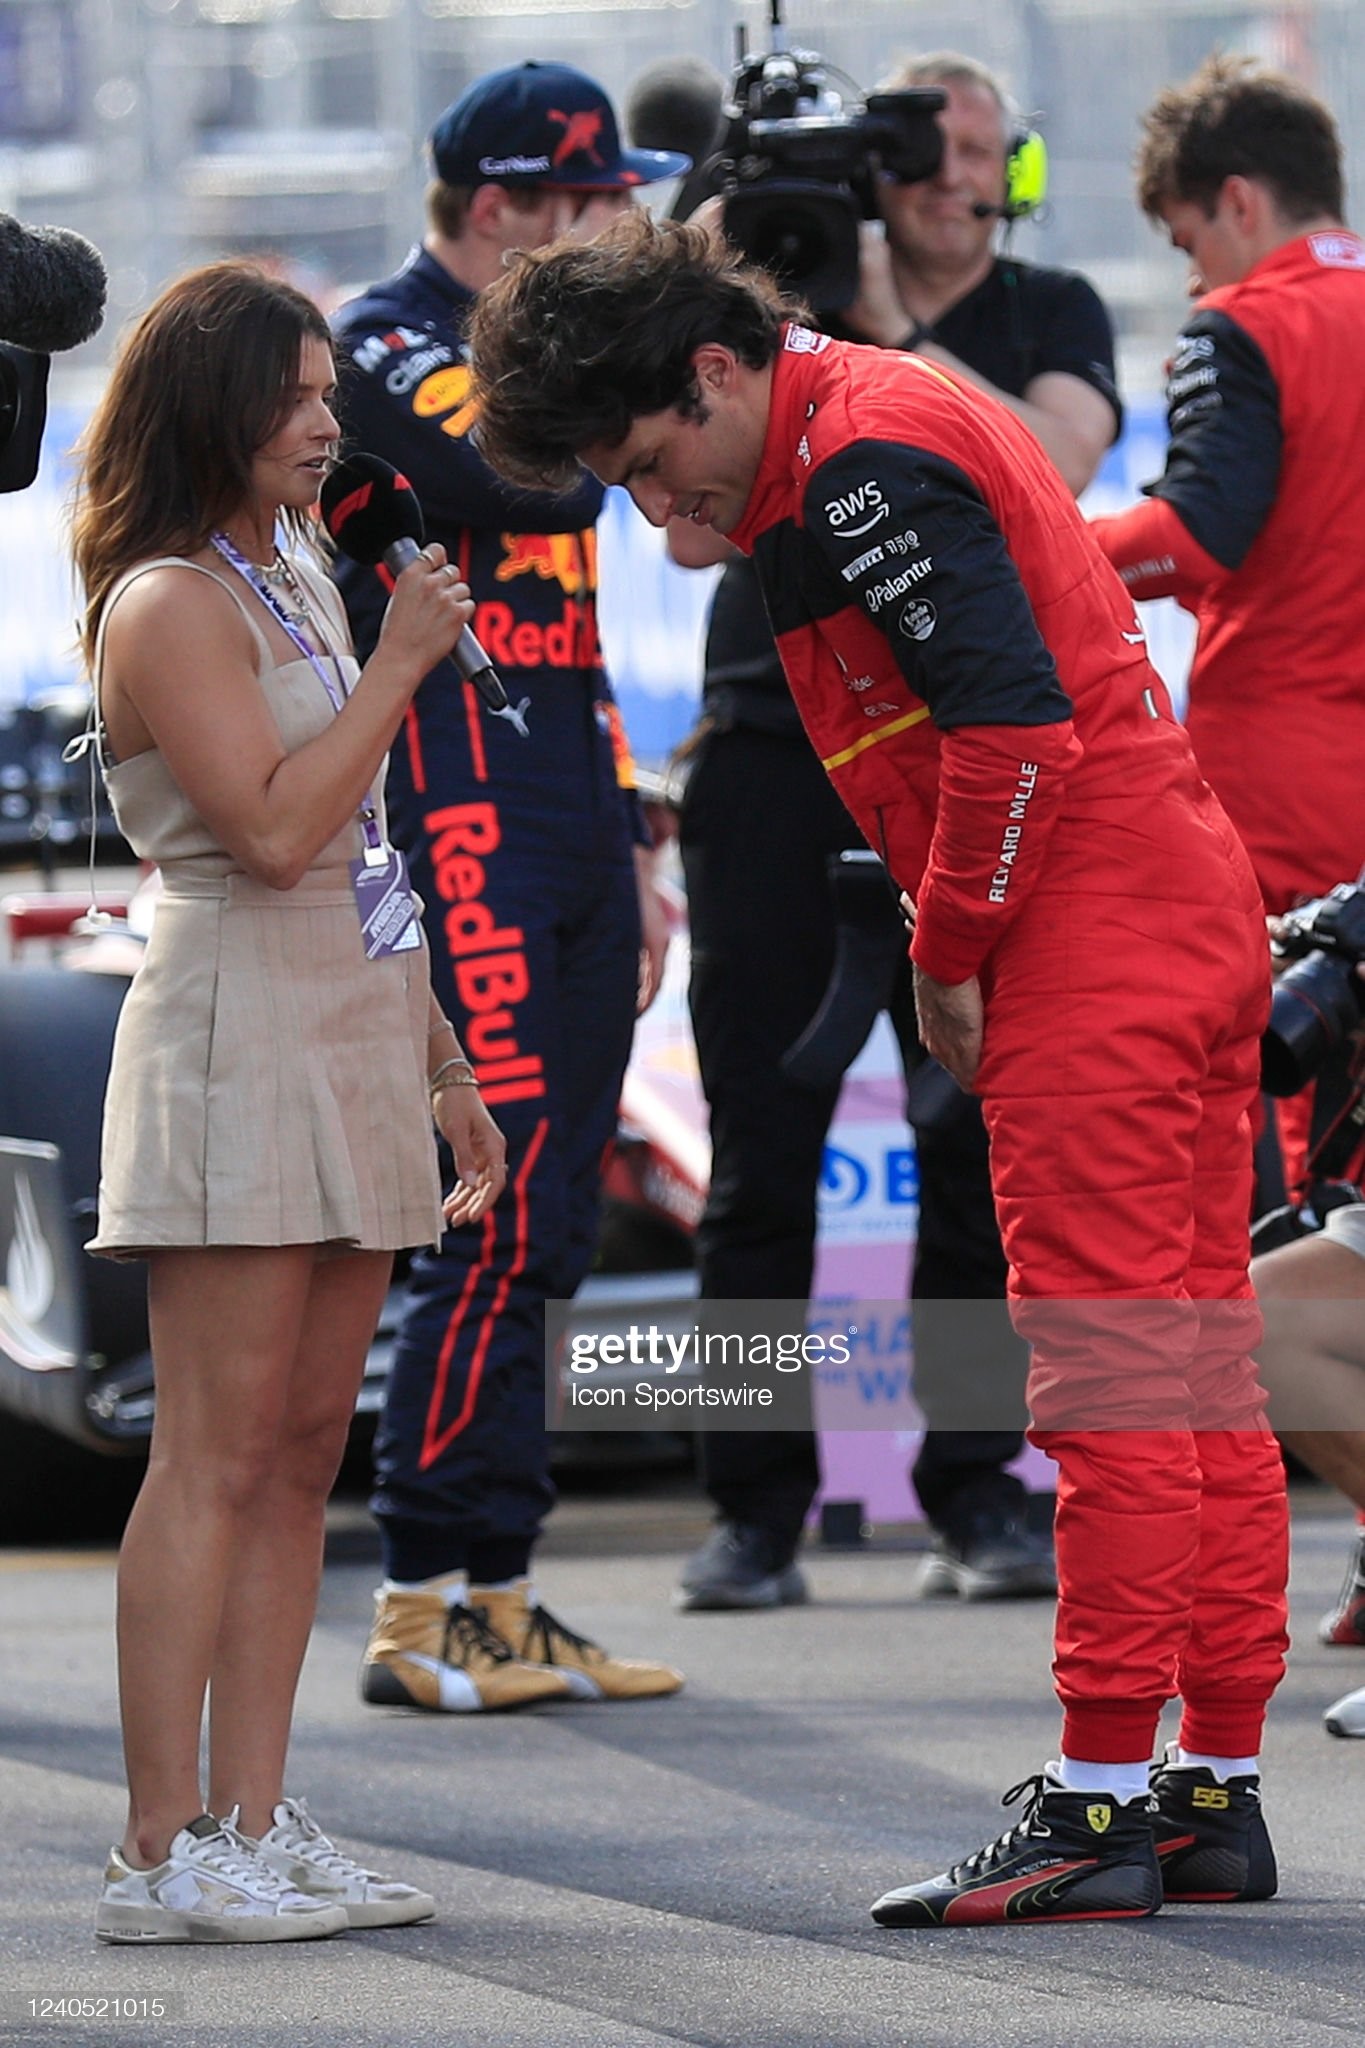 Danica Patrick interviews Scuderia Ferrari driver Carlos Sainz (55) after qualifications for the Miami Grand Prix on May 07, 2022 at the Miami International Autodrome in Miami Gardens, Florida.